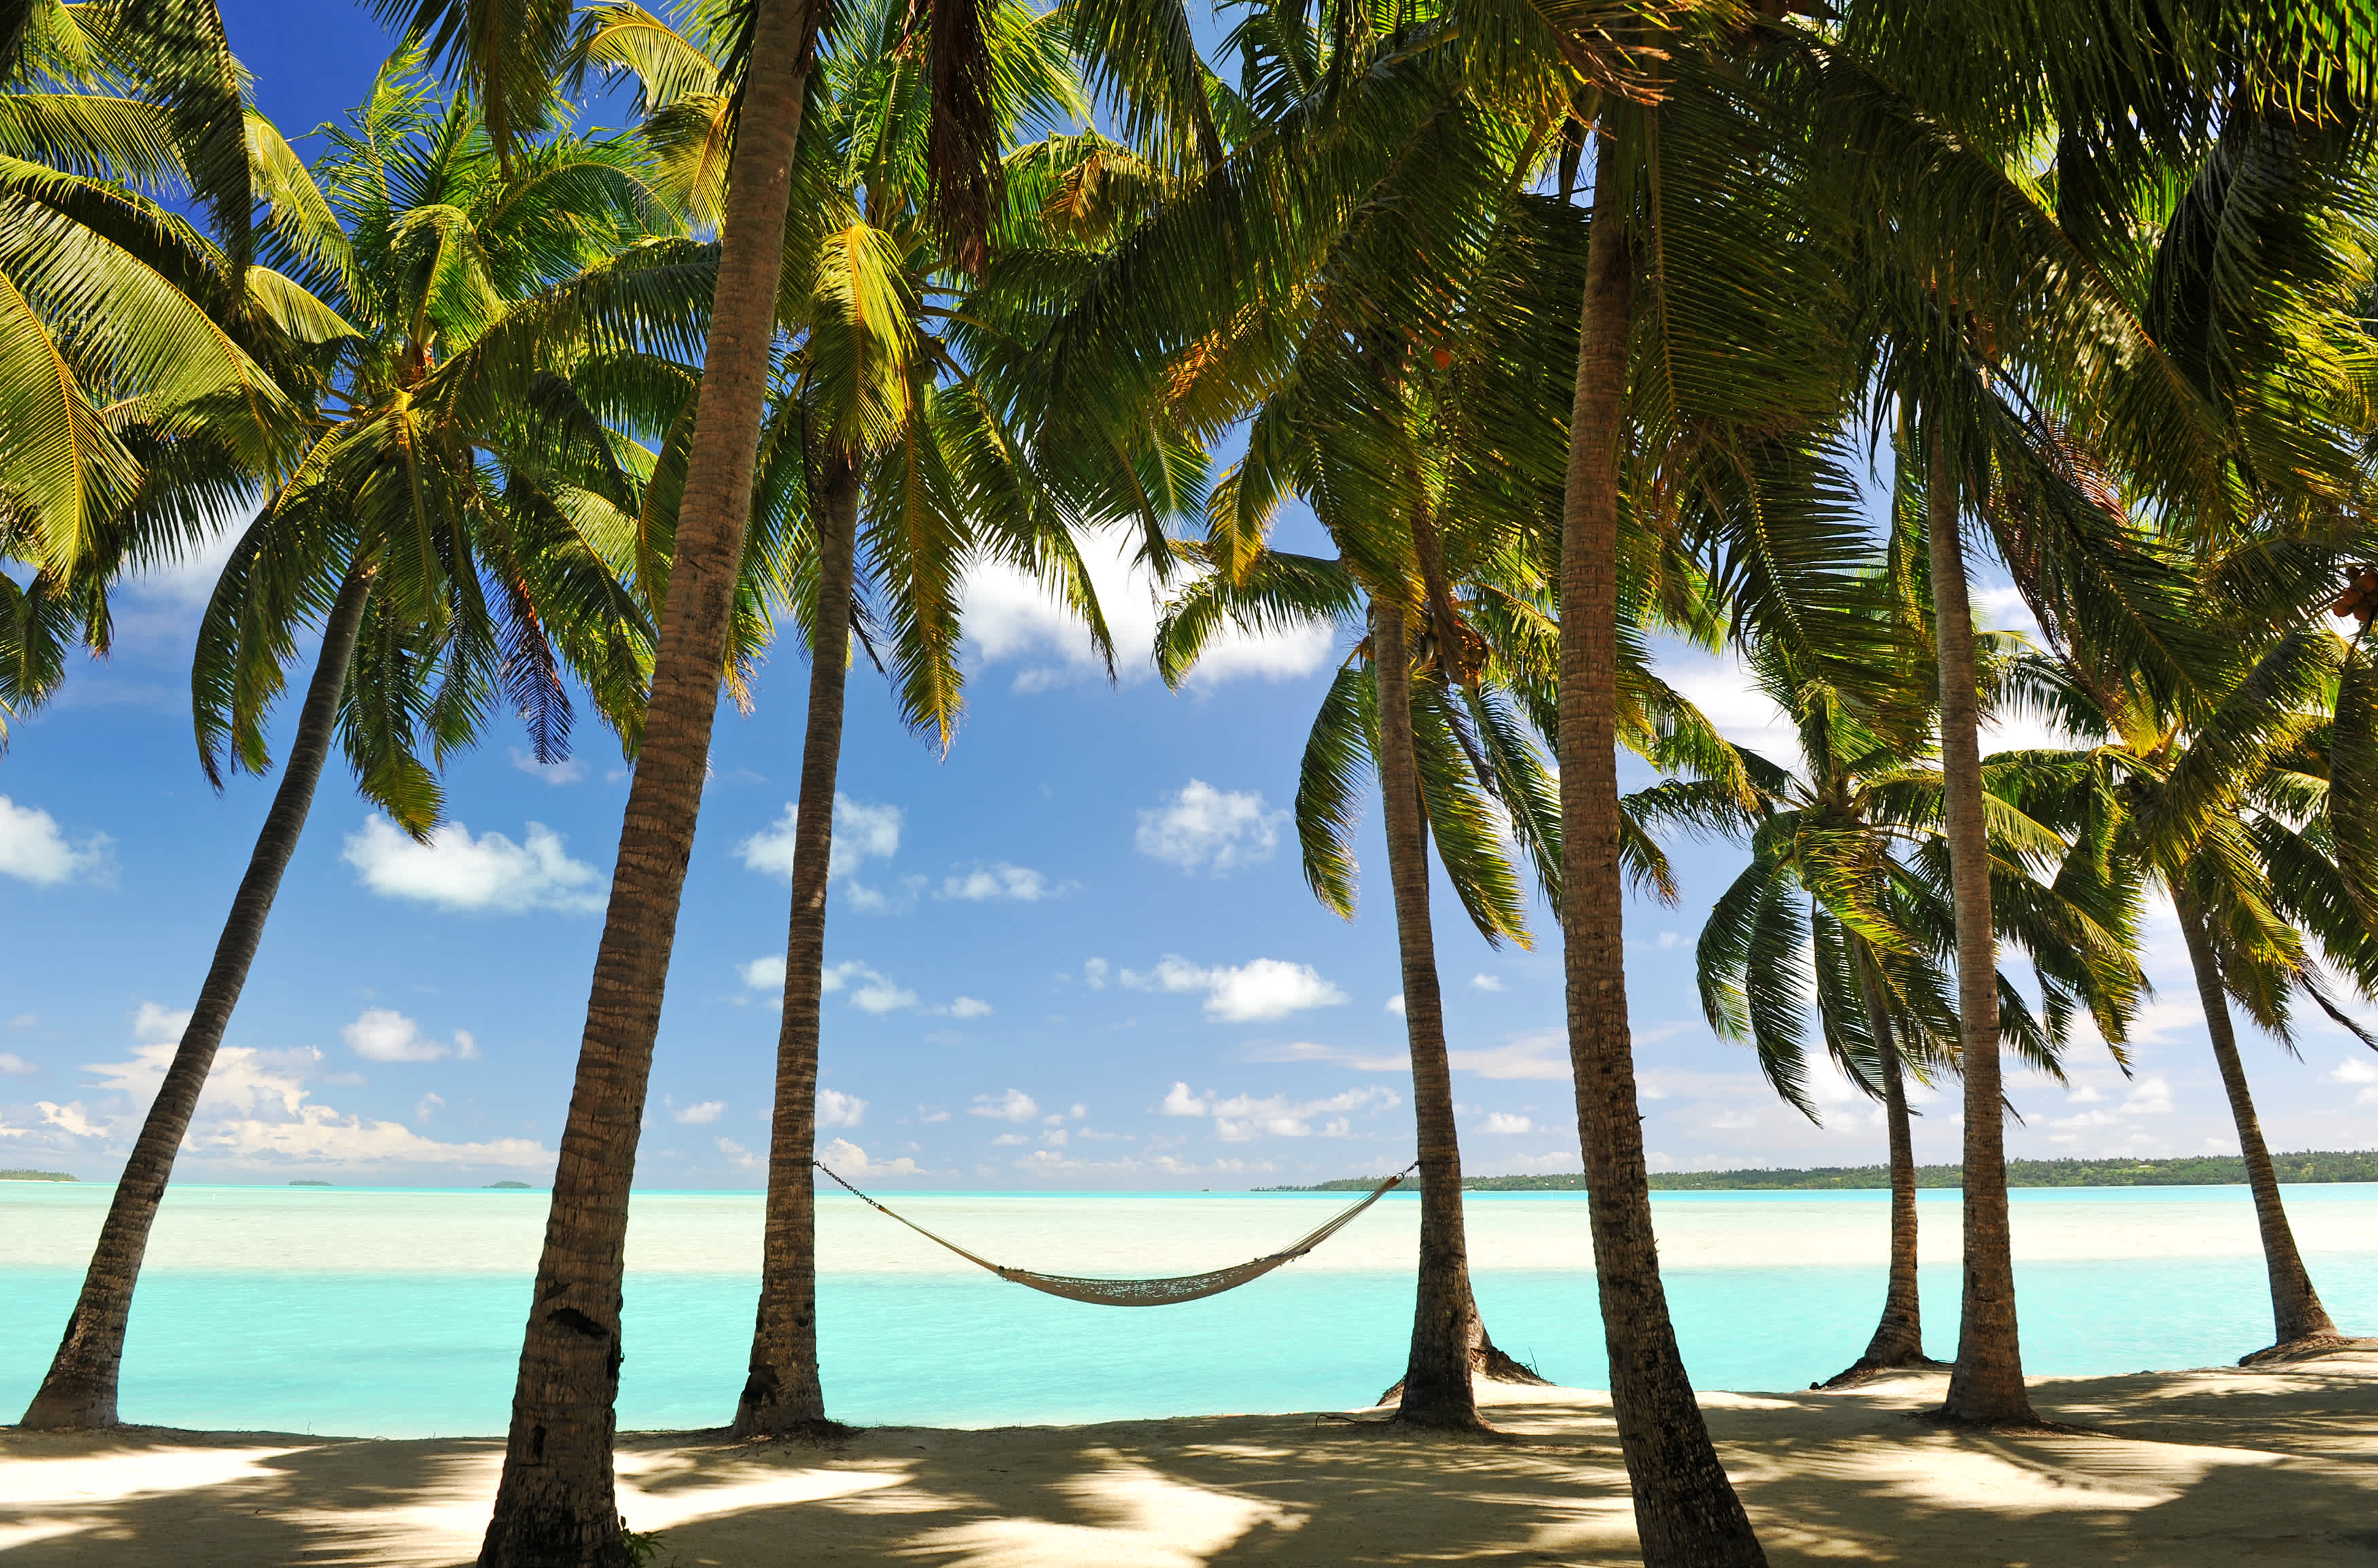 Détendez-vous sur des plages paradisiaques bordées de palmiers pendant votre voyage à l'île Maurice.